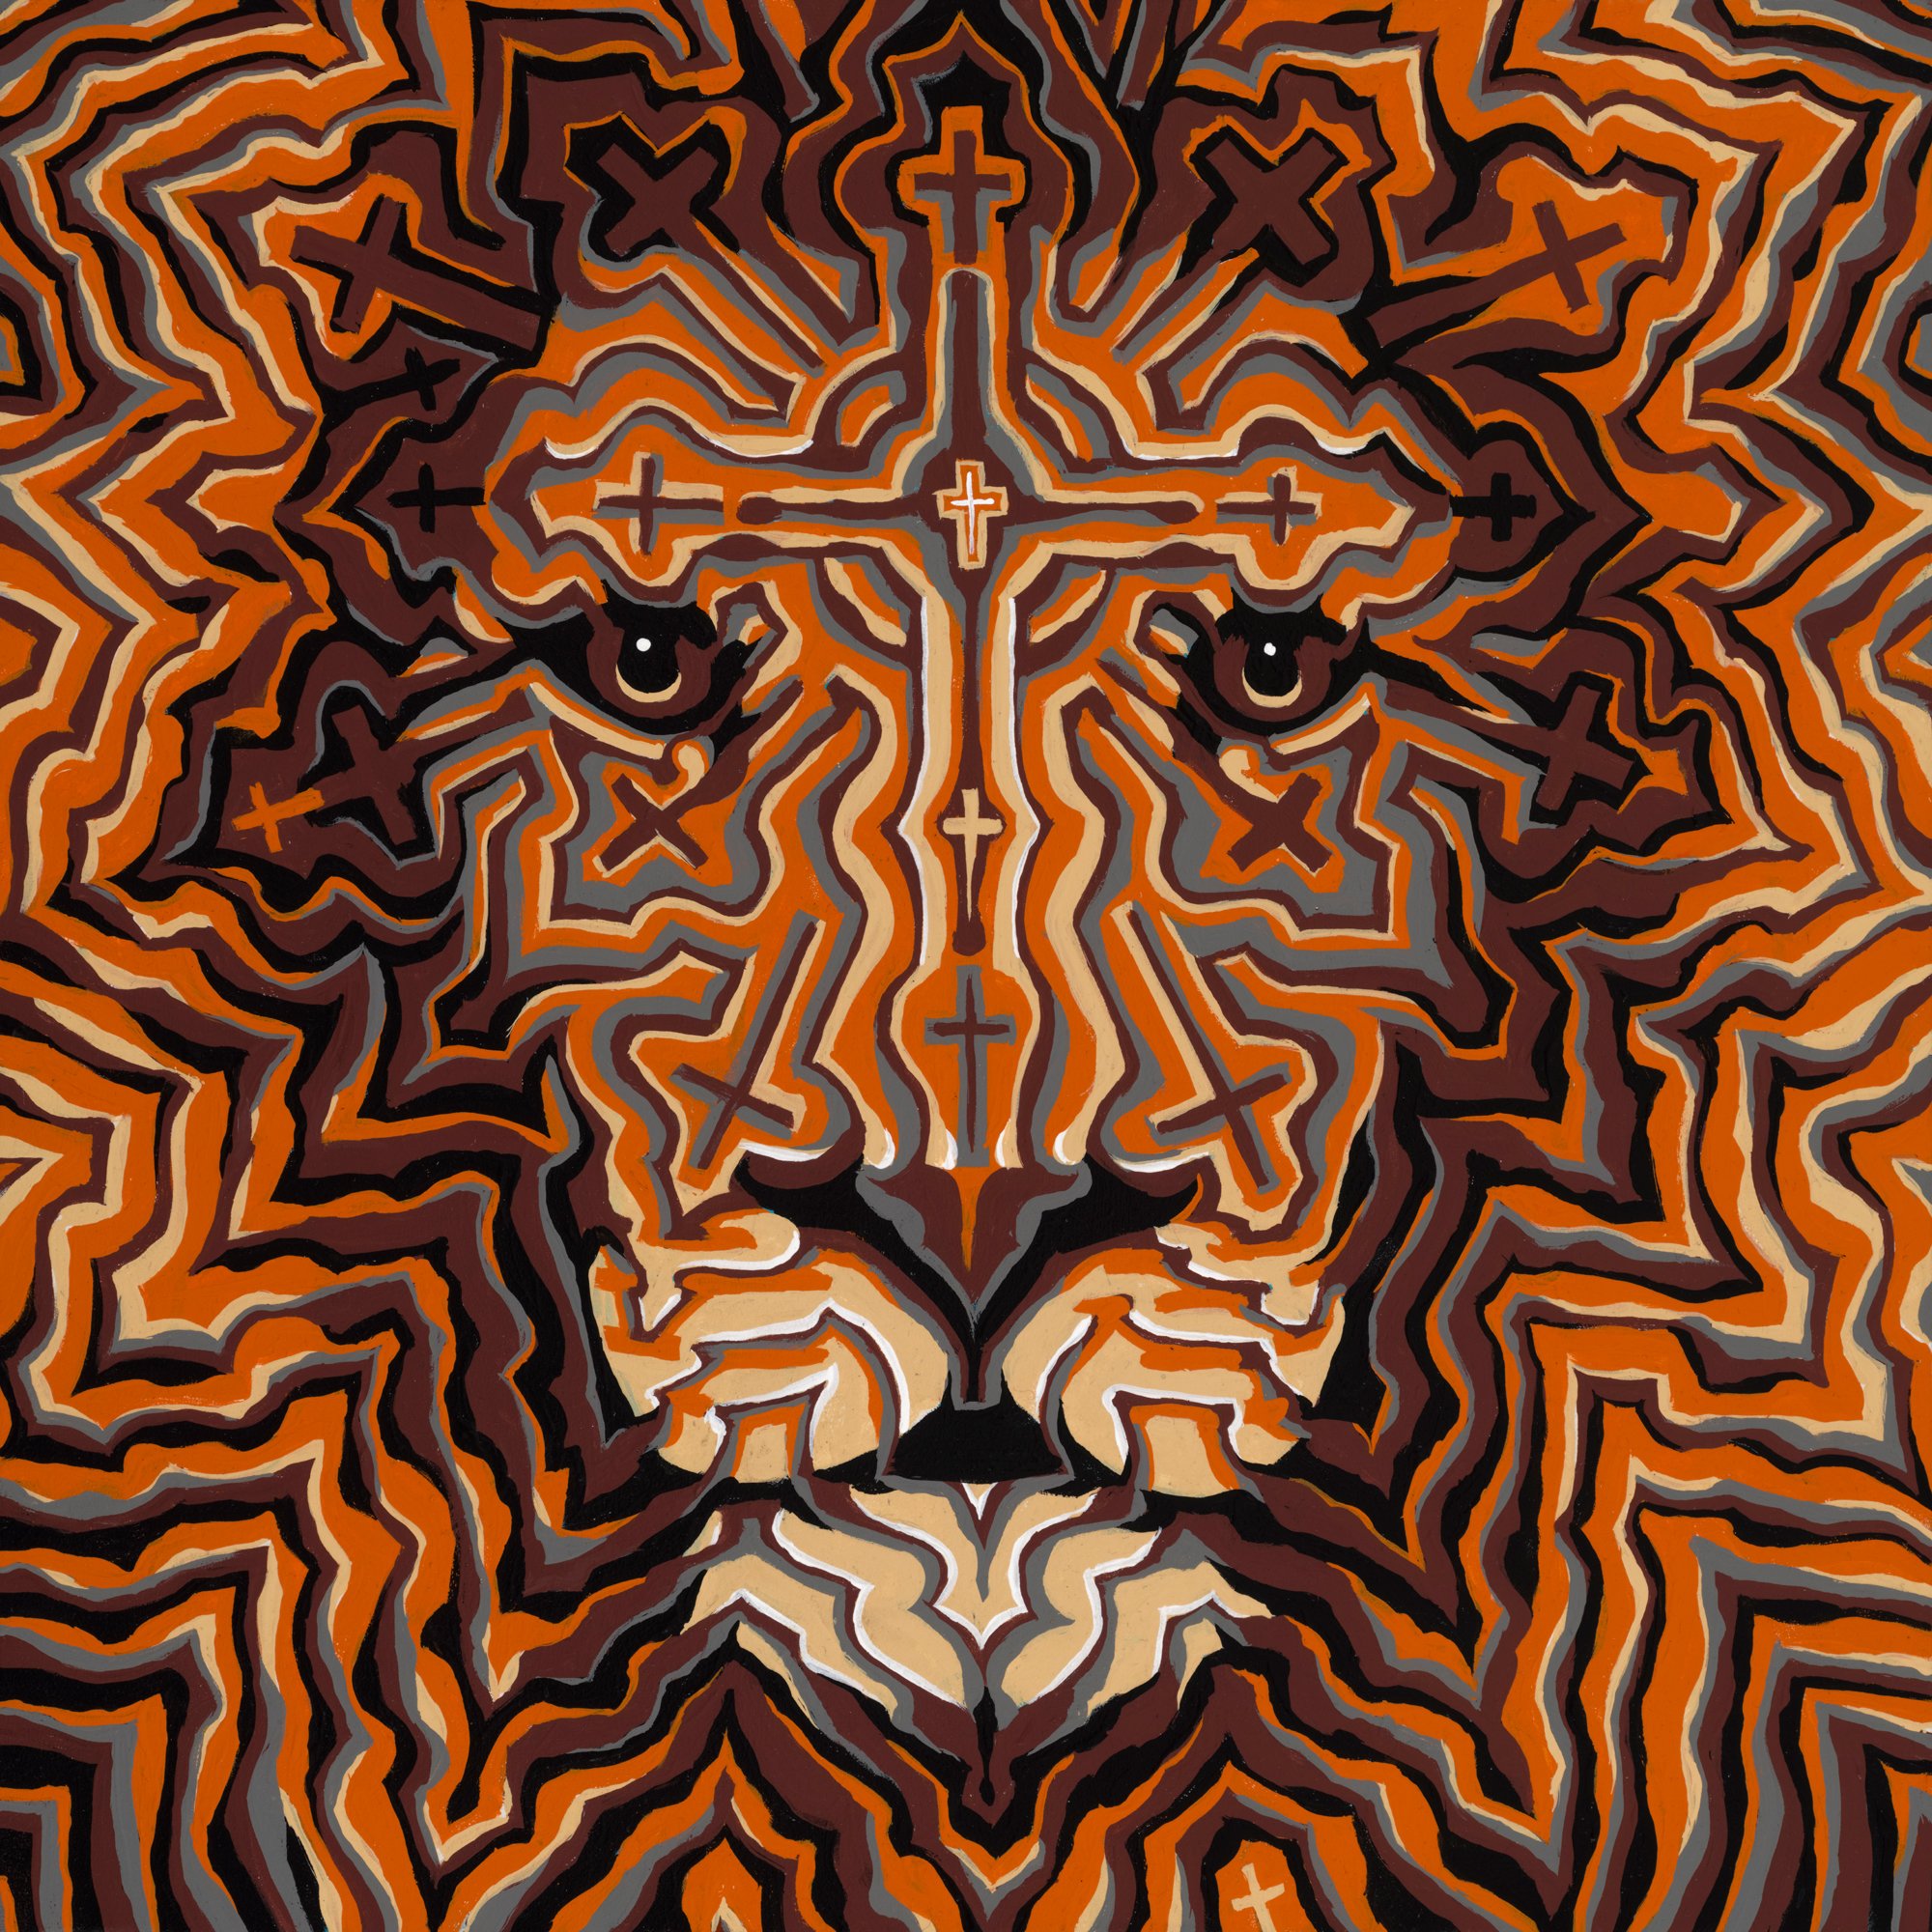 "Lion of Judah" by Bill Tavis